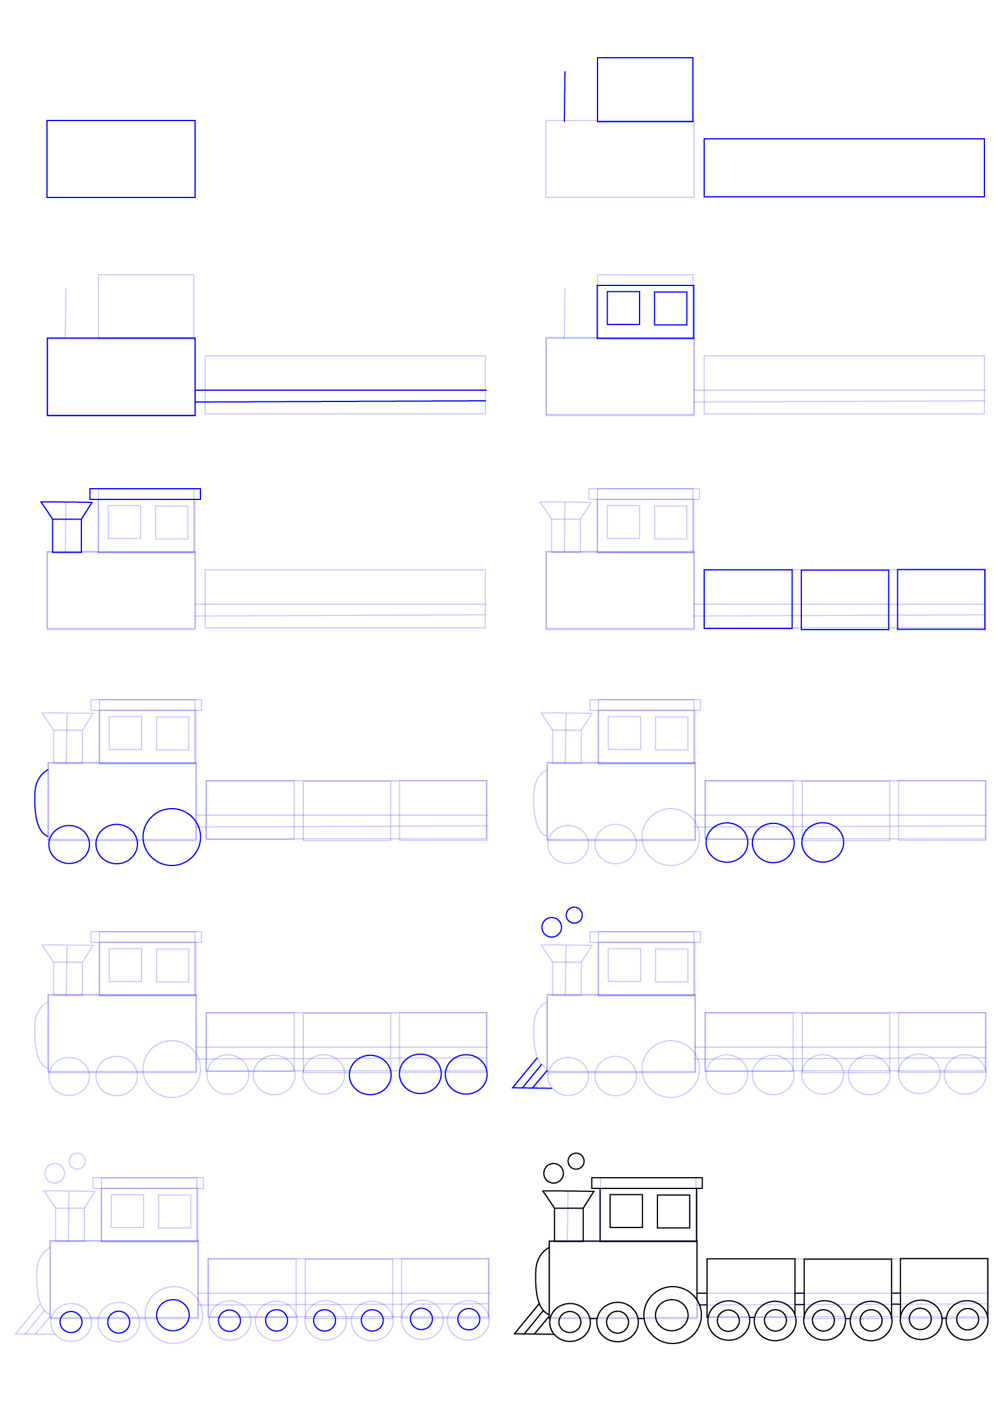 Bir gemi çizmek için basit adımlar (1) çizimi